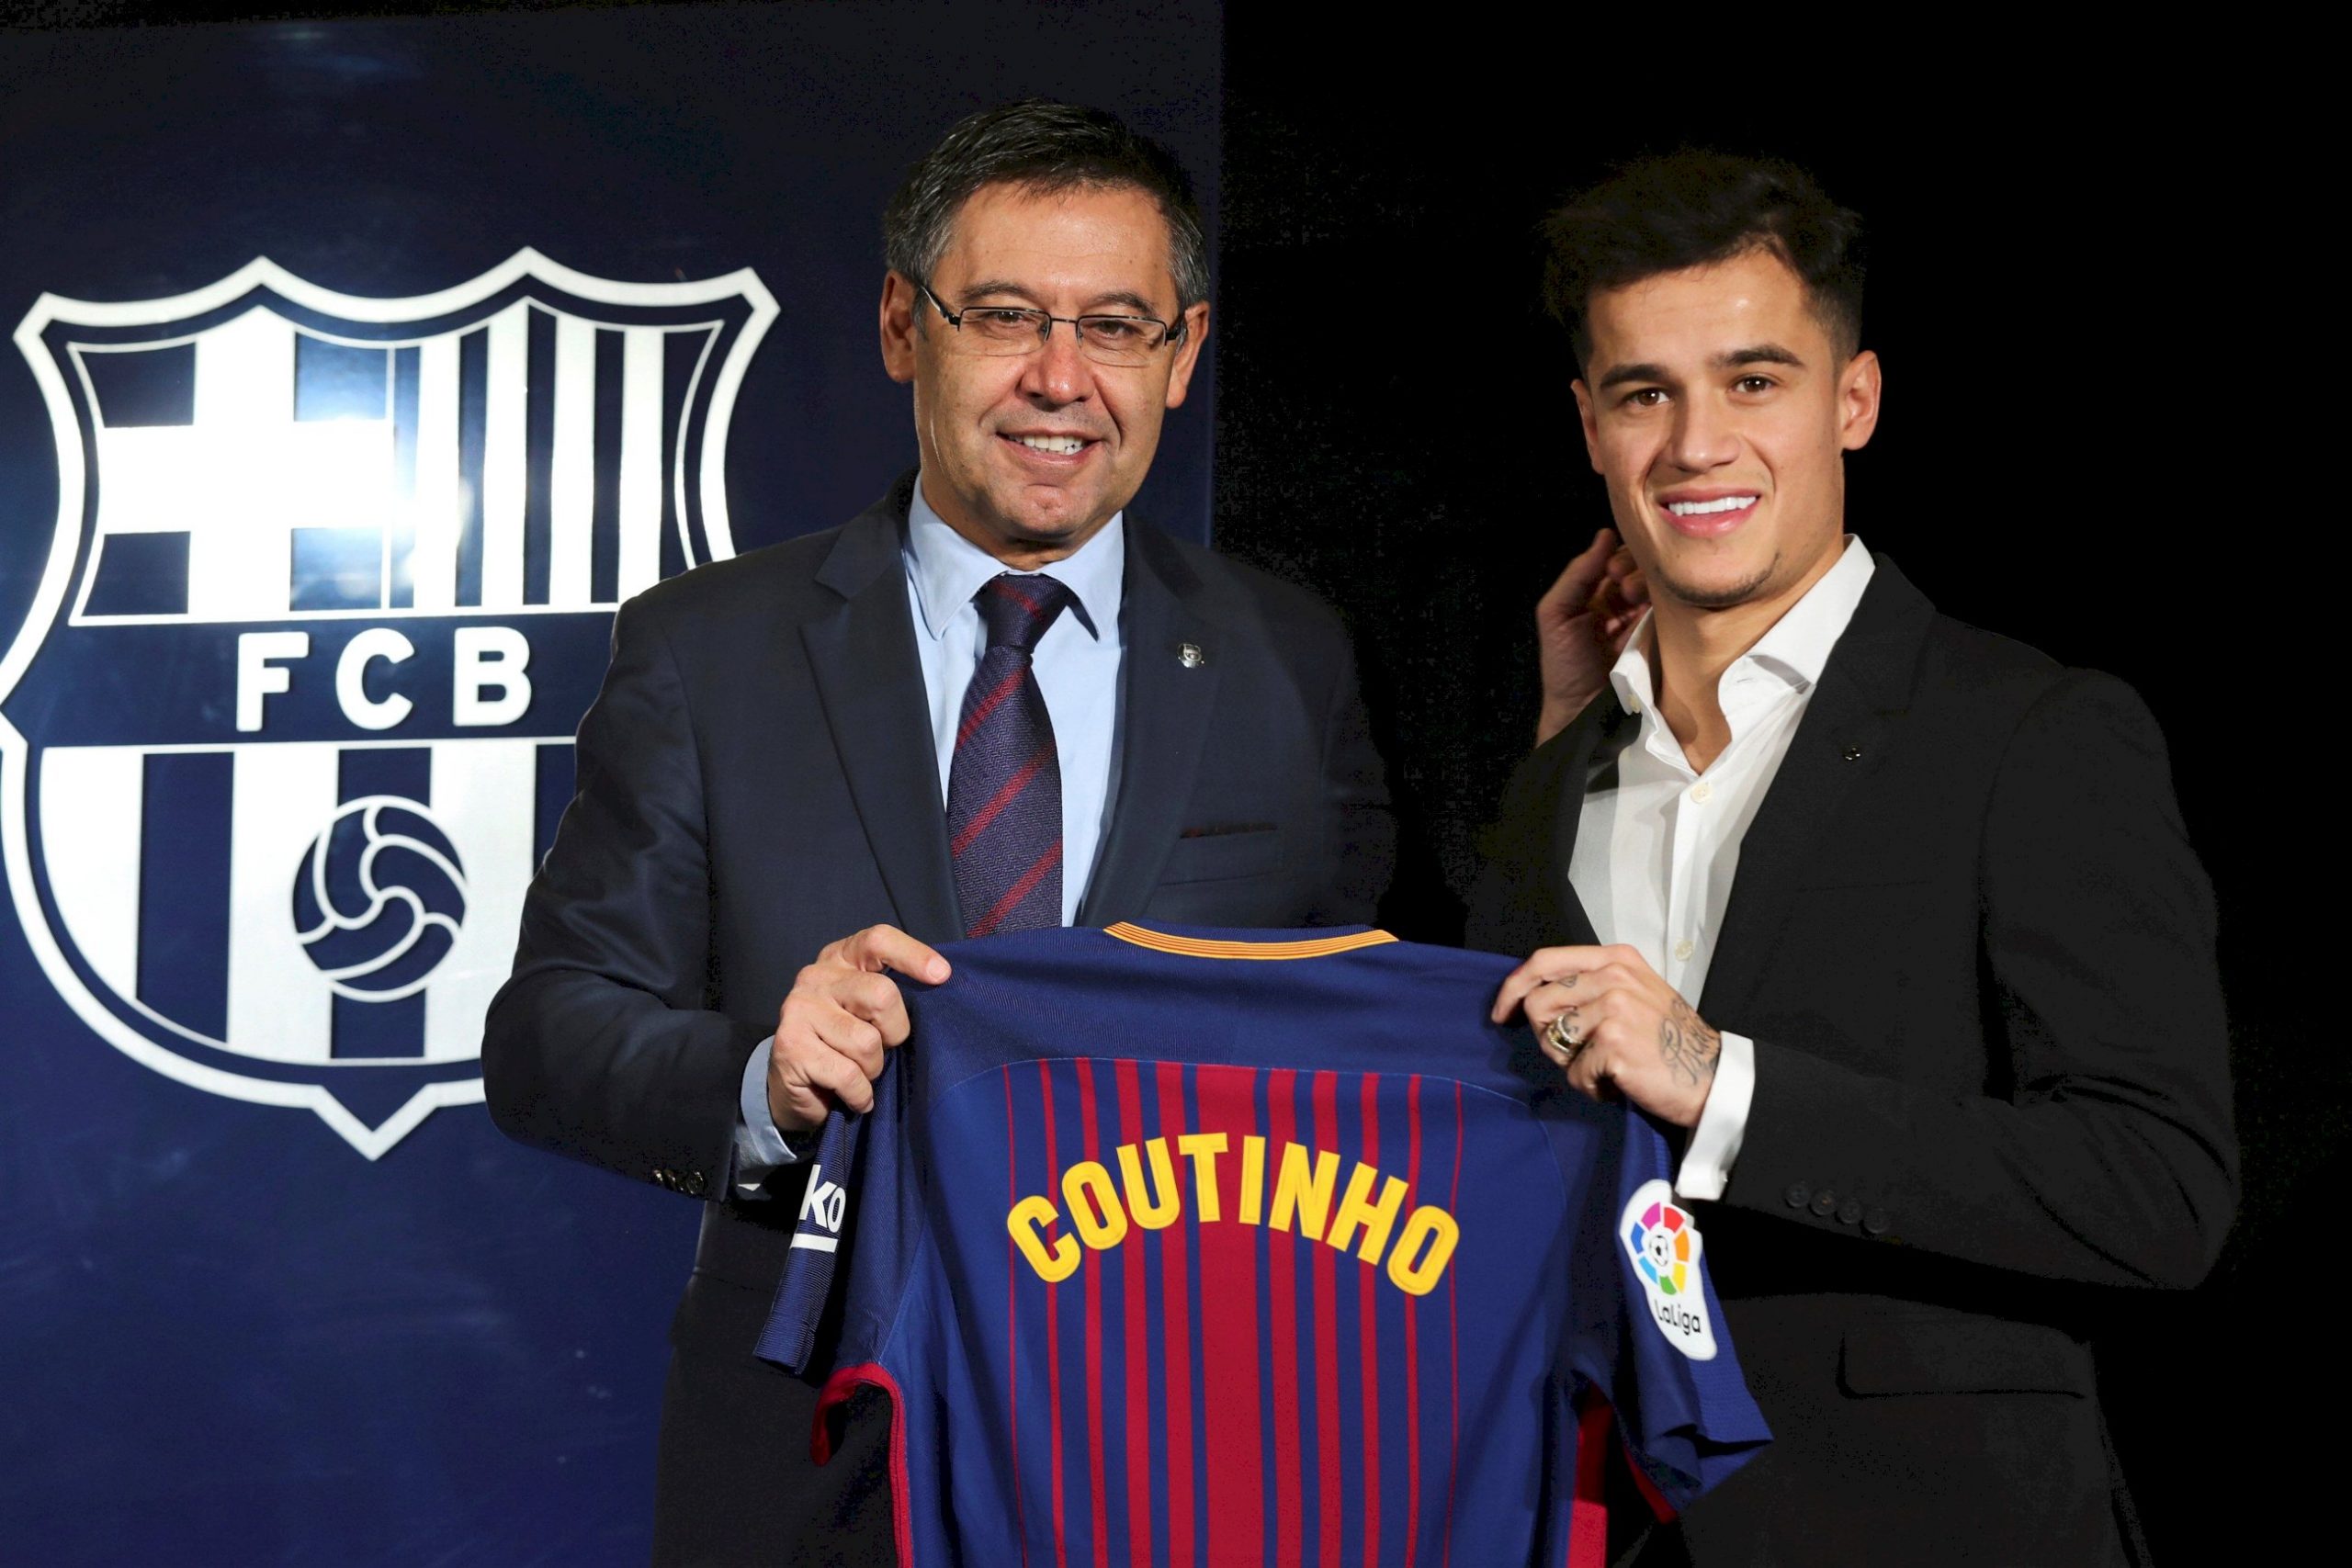 El brasileño Philippe Coutinho, el fichaje más caro de la historia del Barcelona, posa junto al presidente del FC Barcelona, Josep Maria Bartomeu. | EFE